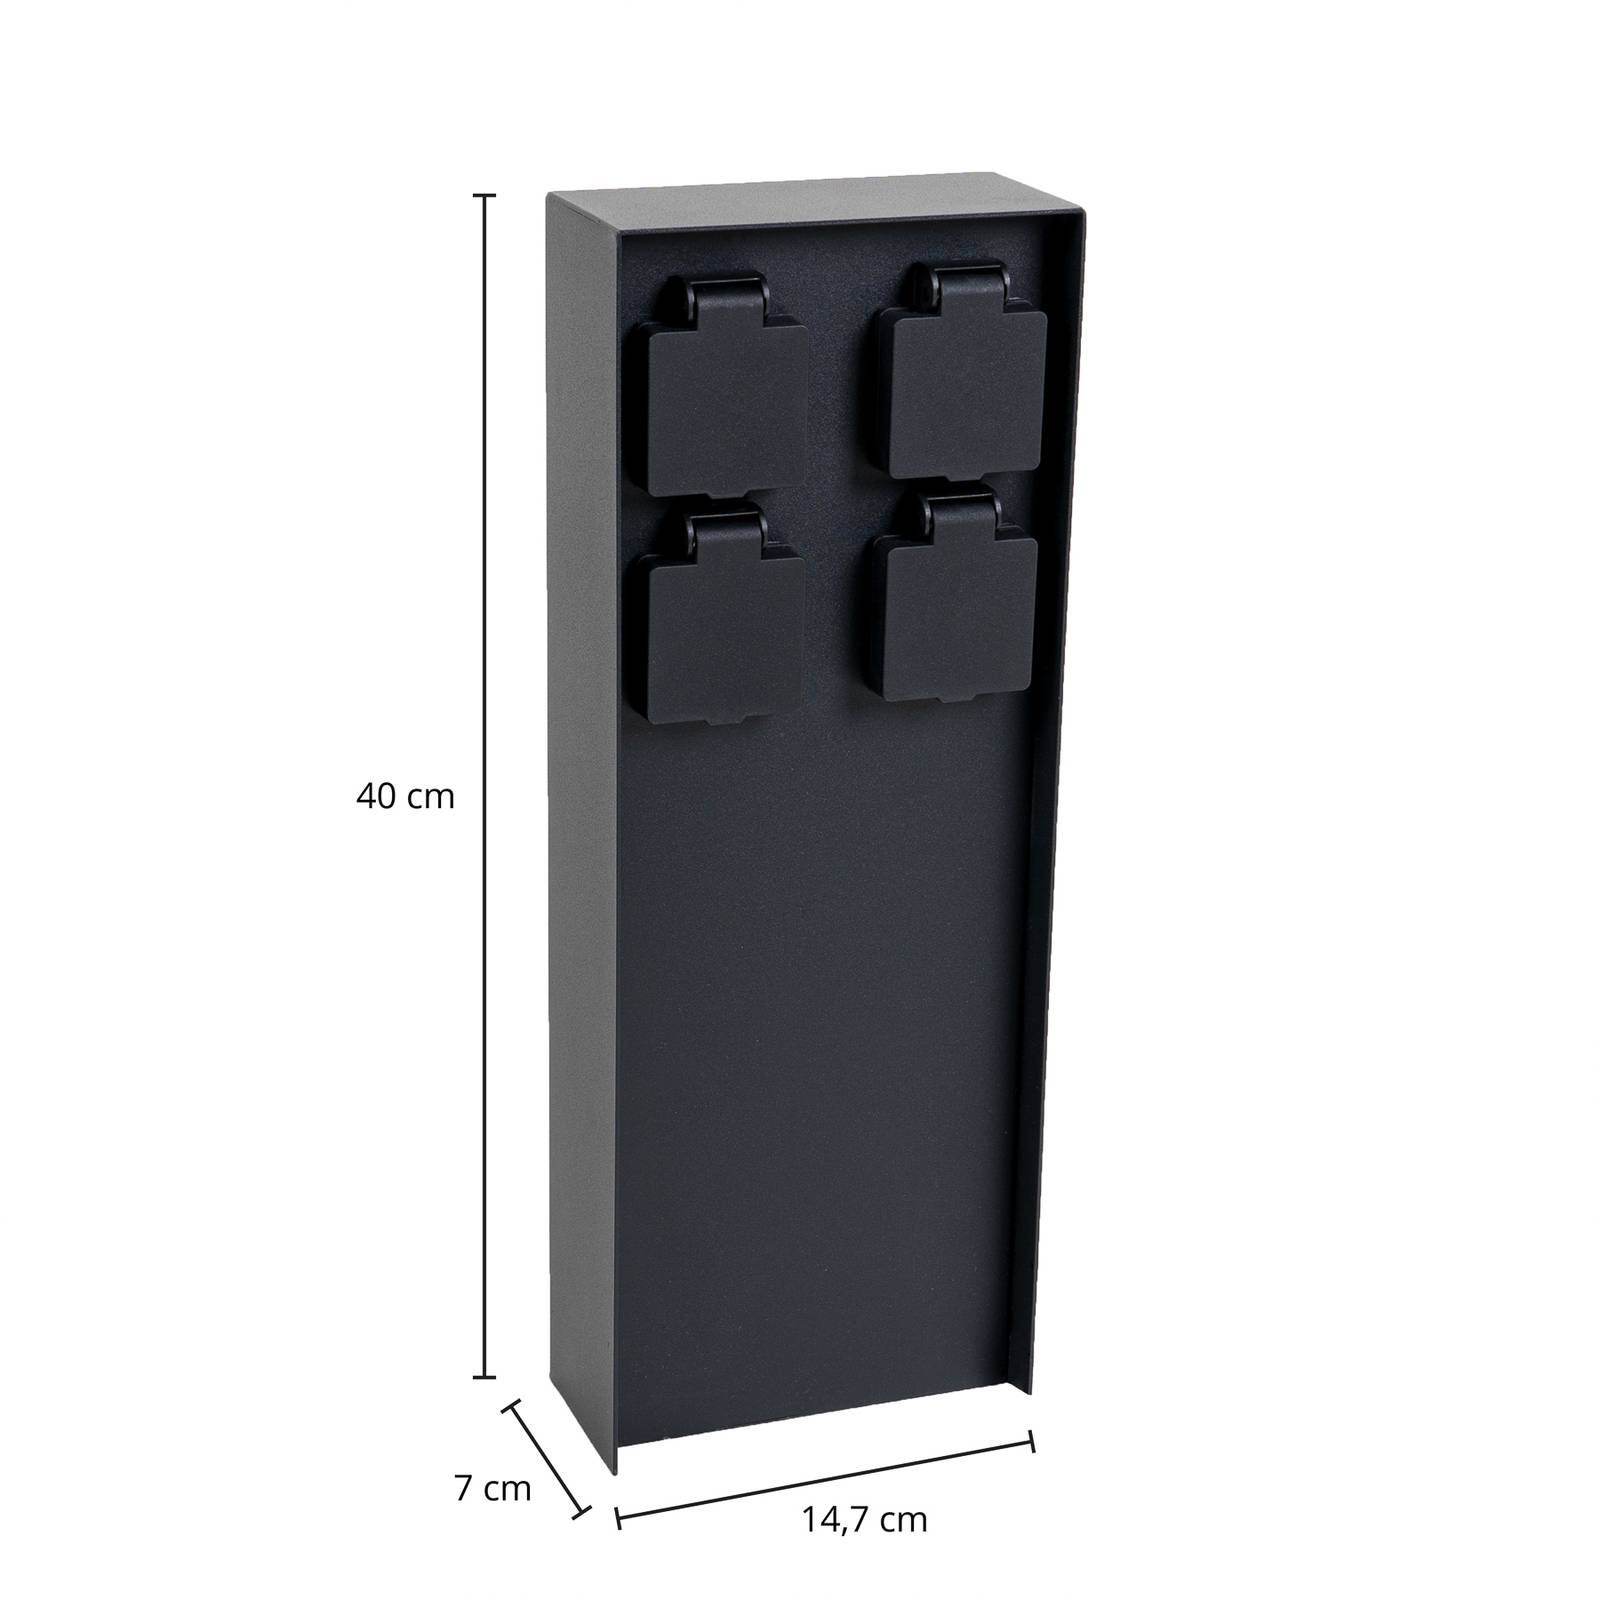 E-shop Energetický stĺp Prios Foranda, 4 kusy, čierny, 40 cm